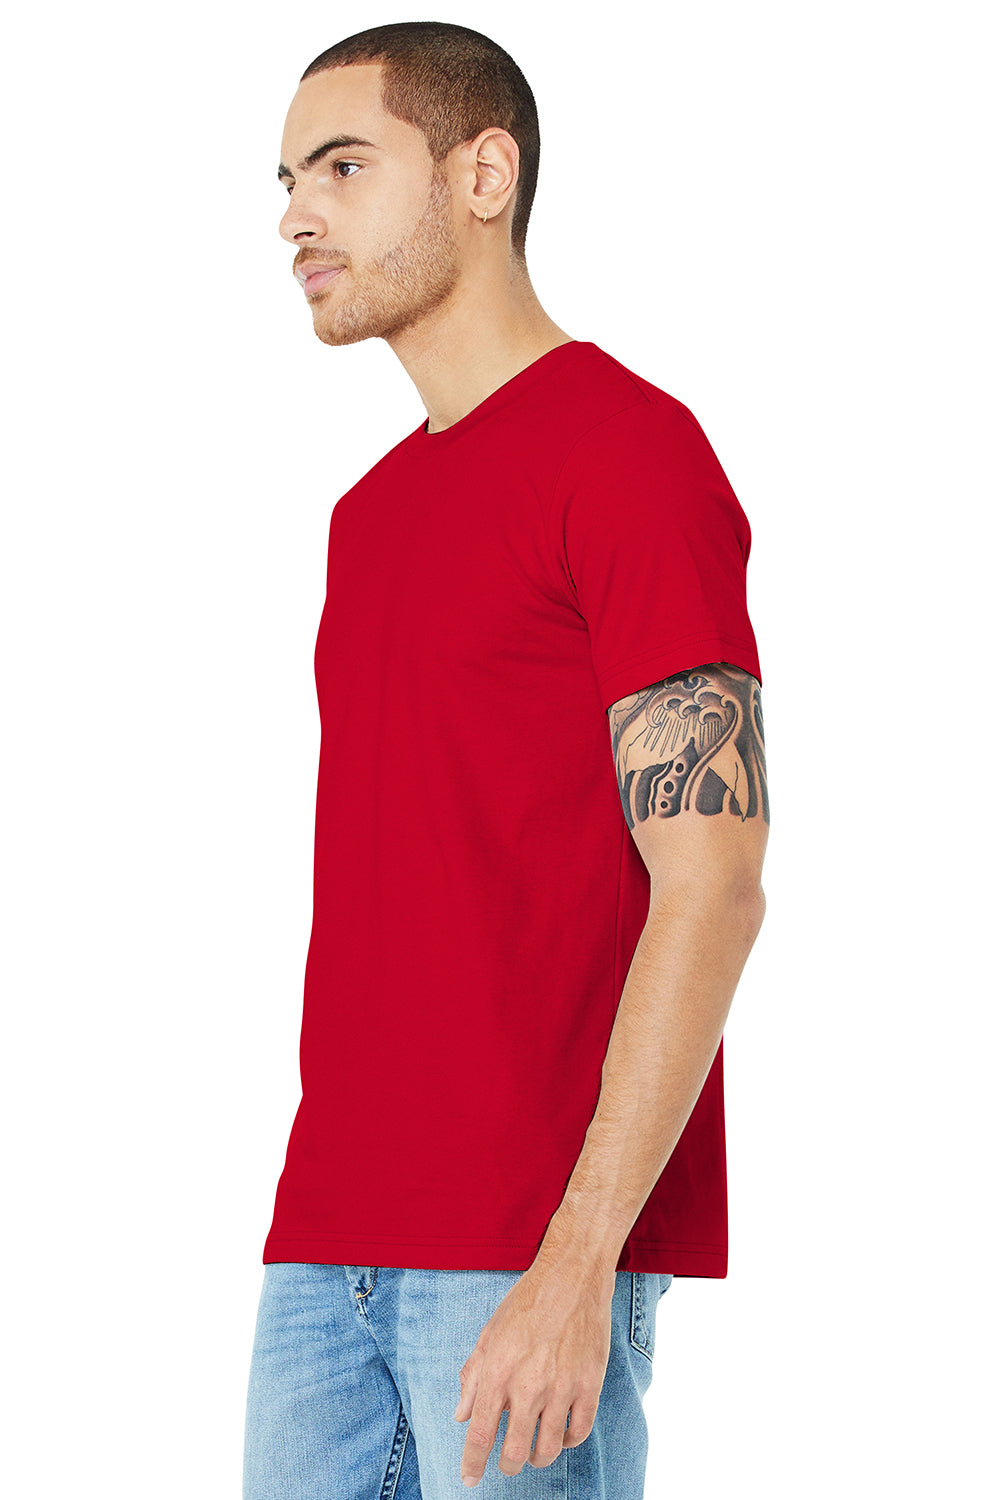 Bella + Canvas BC3001/3001C Mens Jersey Short Sleeve Crewneck T-Shirt Red Model 3Q